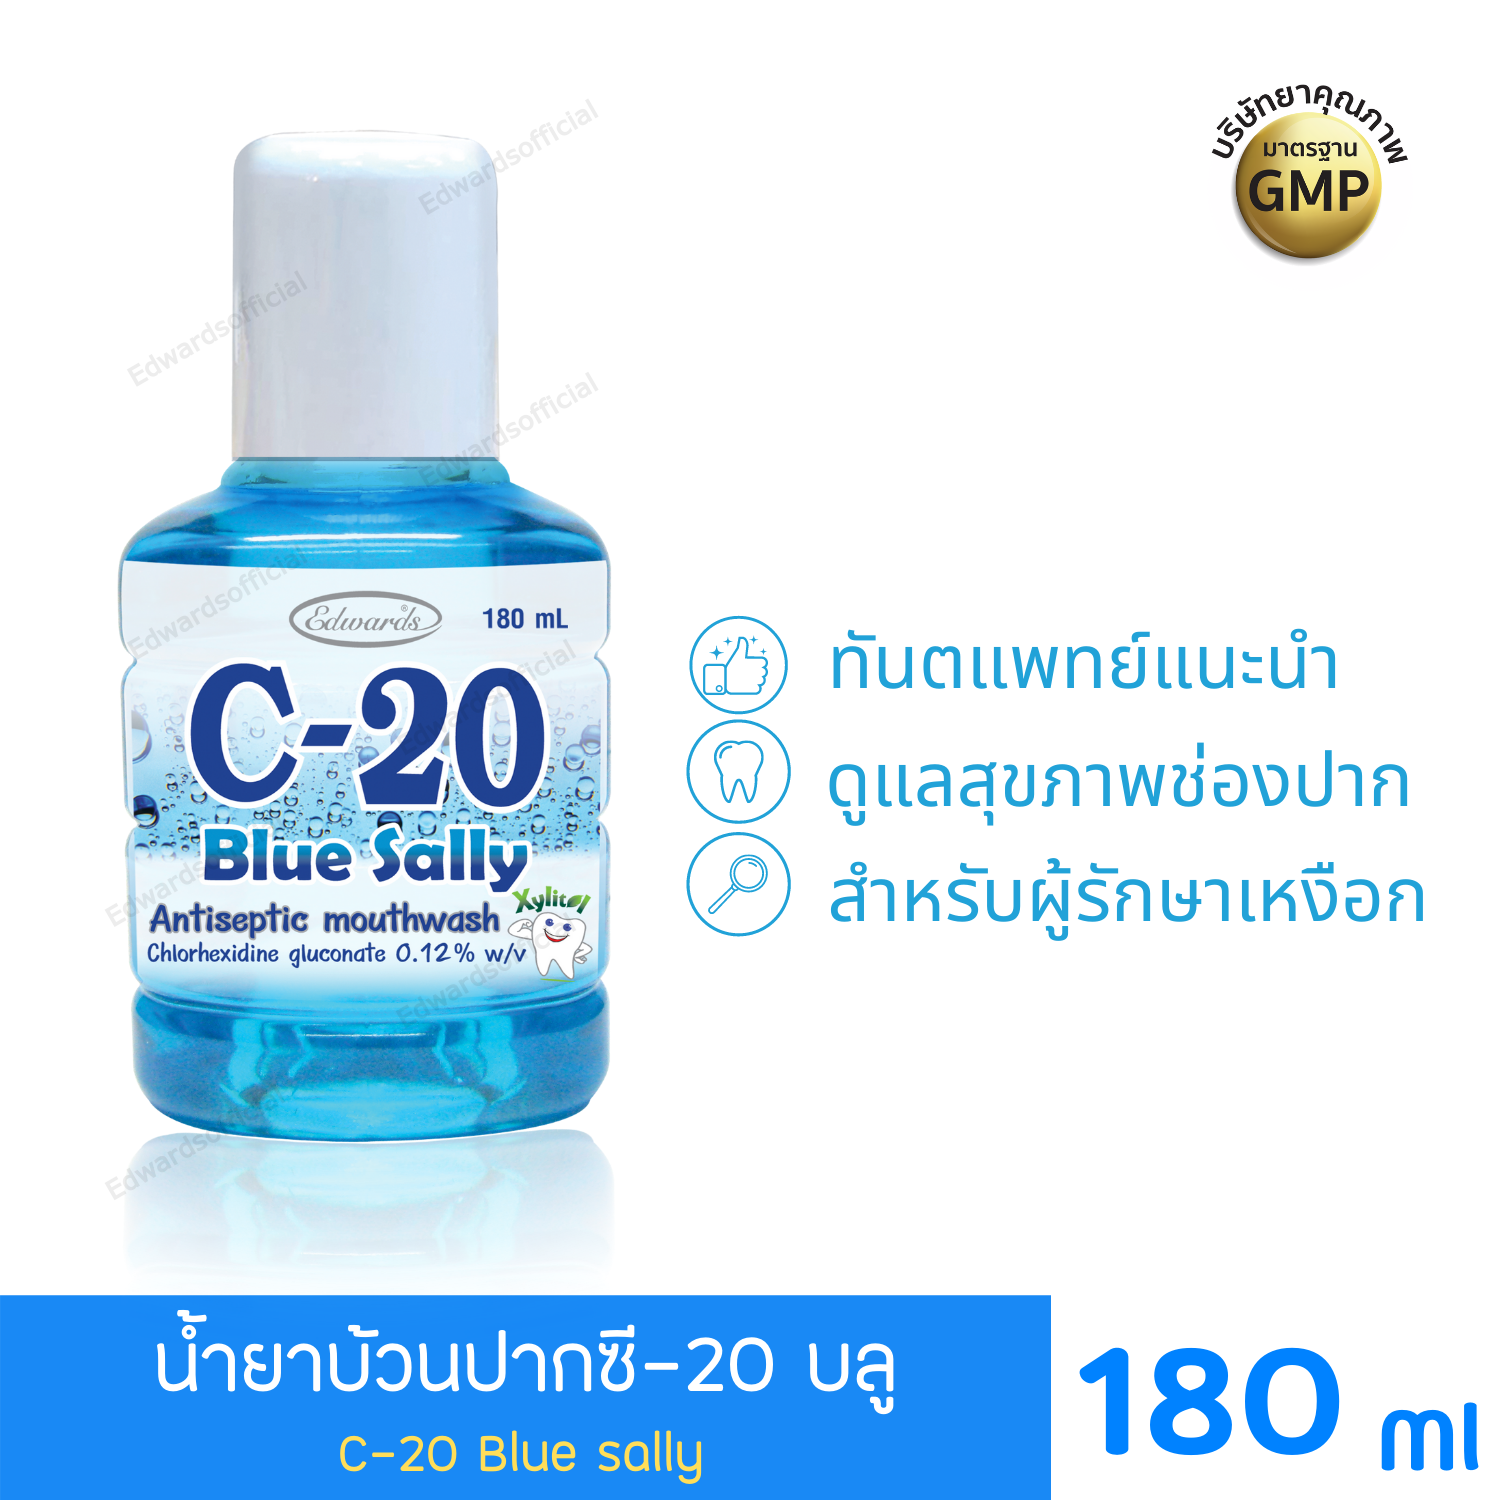 ผลิตภัณฑ์ซี20 สีฟ้า C20 Blue sally ดูแลช่องปาก กลั้วปาก ลดคราบ ช่องปากสะอาด ขนาด 180 มล.